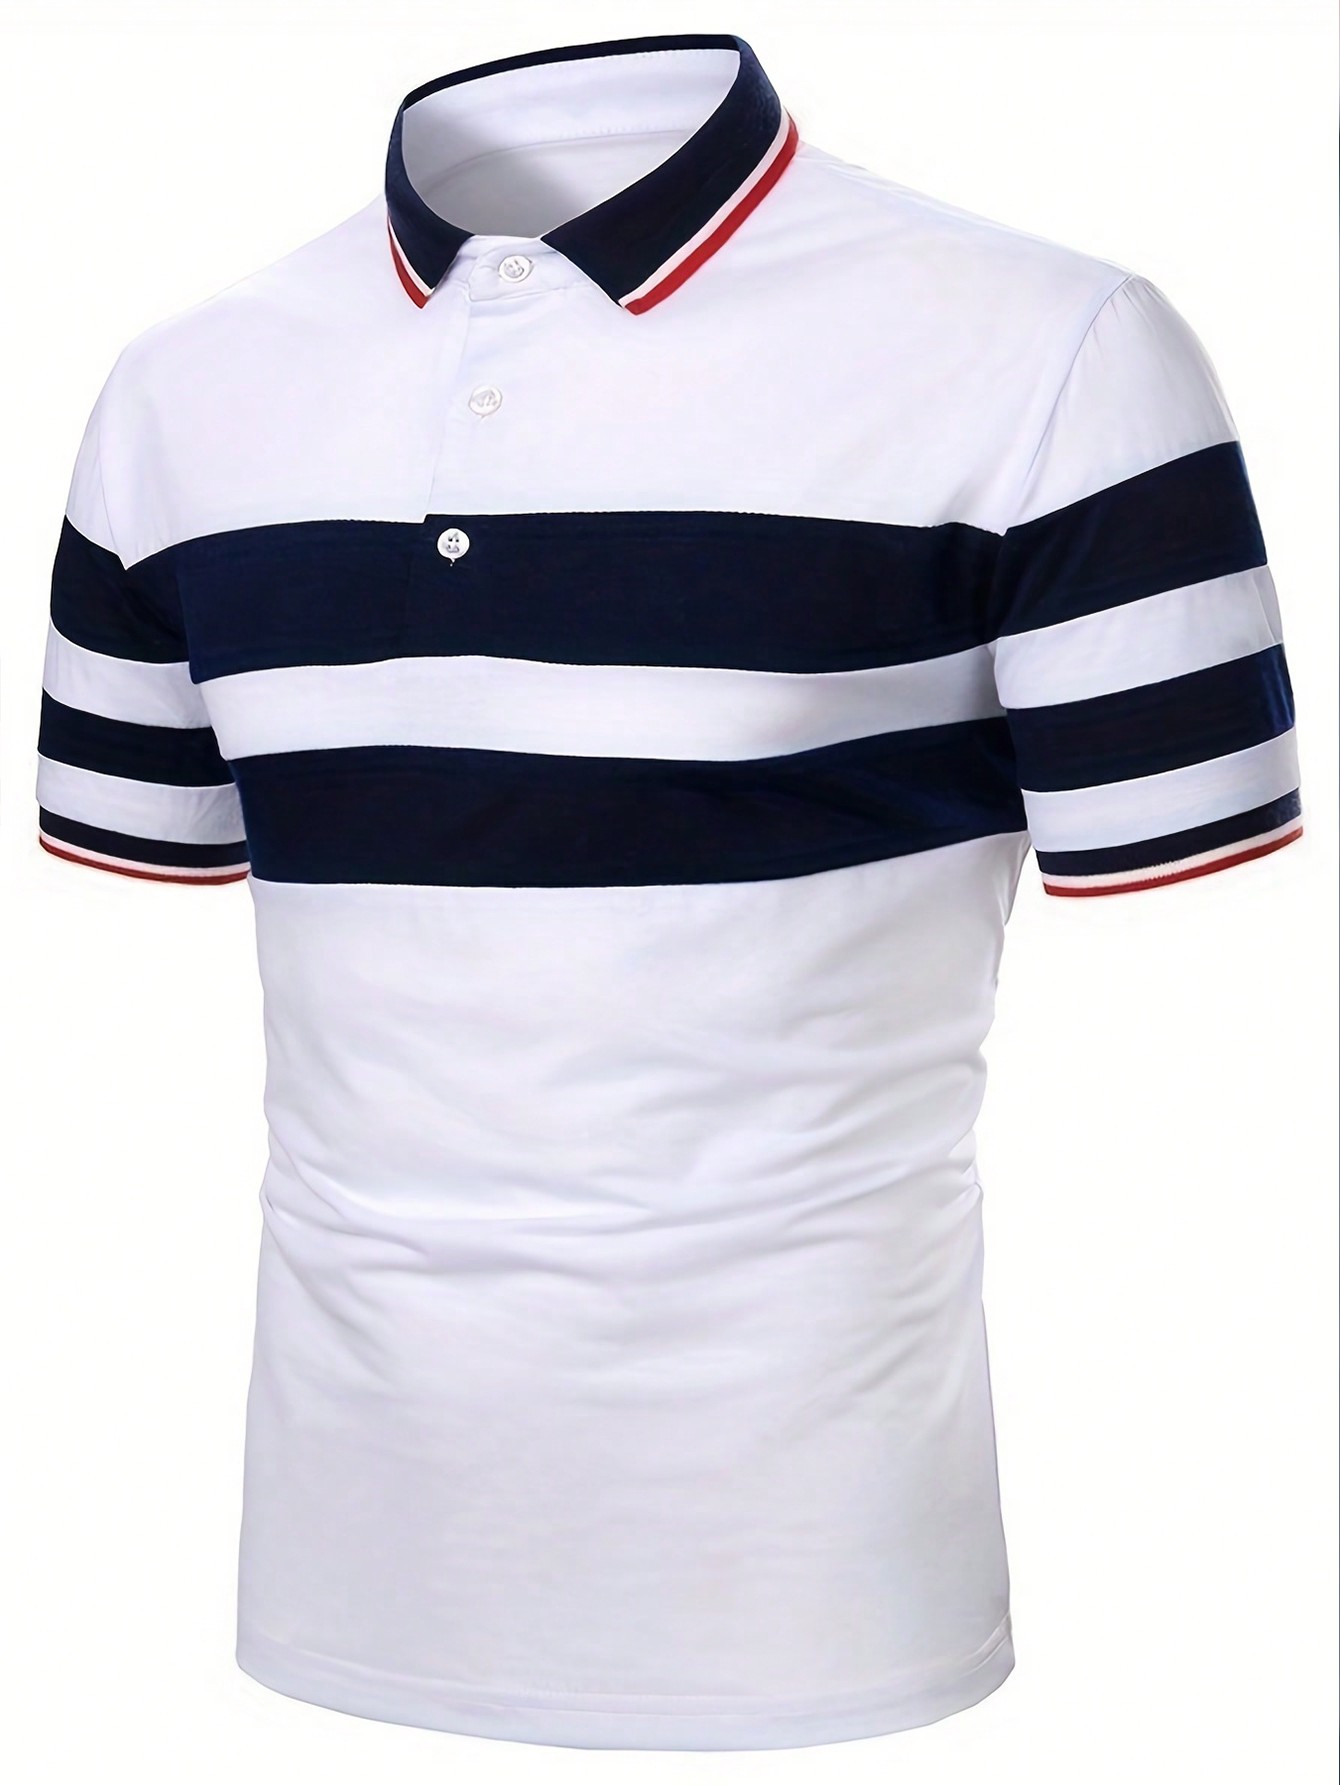 Мужская полосатая футболка-поло с коротким рукавом, белый рубашка мужская из ткани оксфорд с коротким рукавом в полоску 100% хлопок